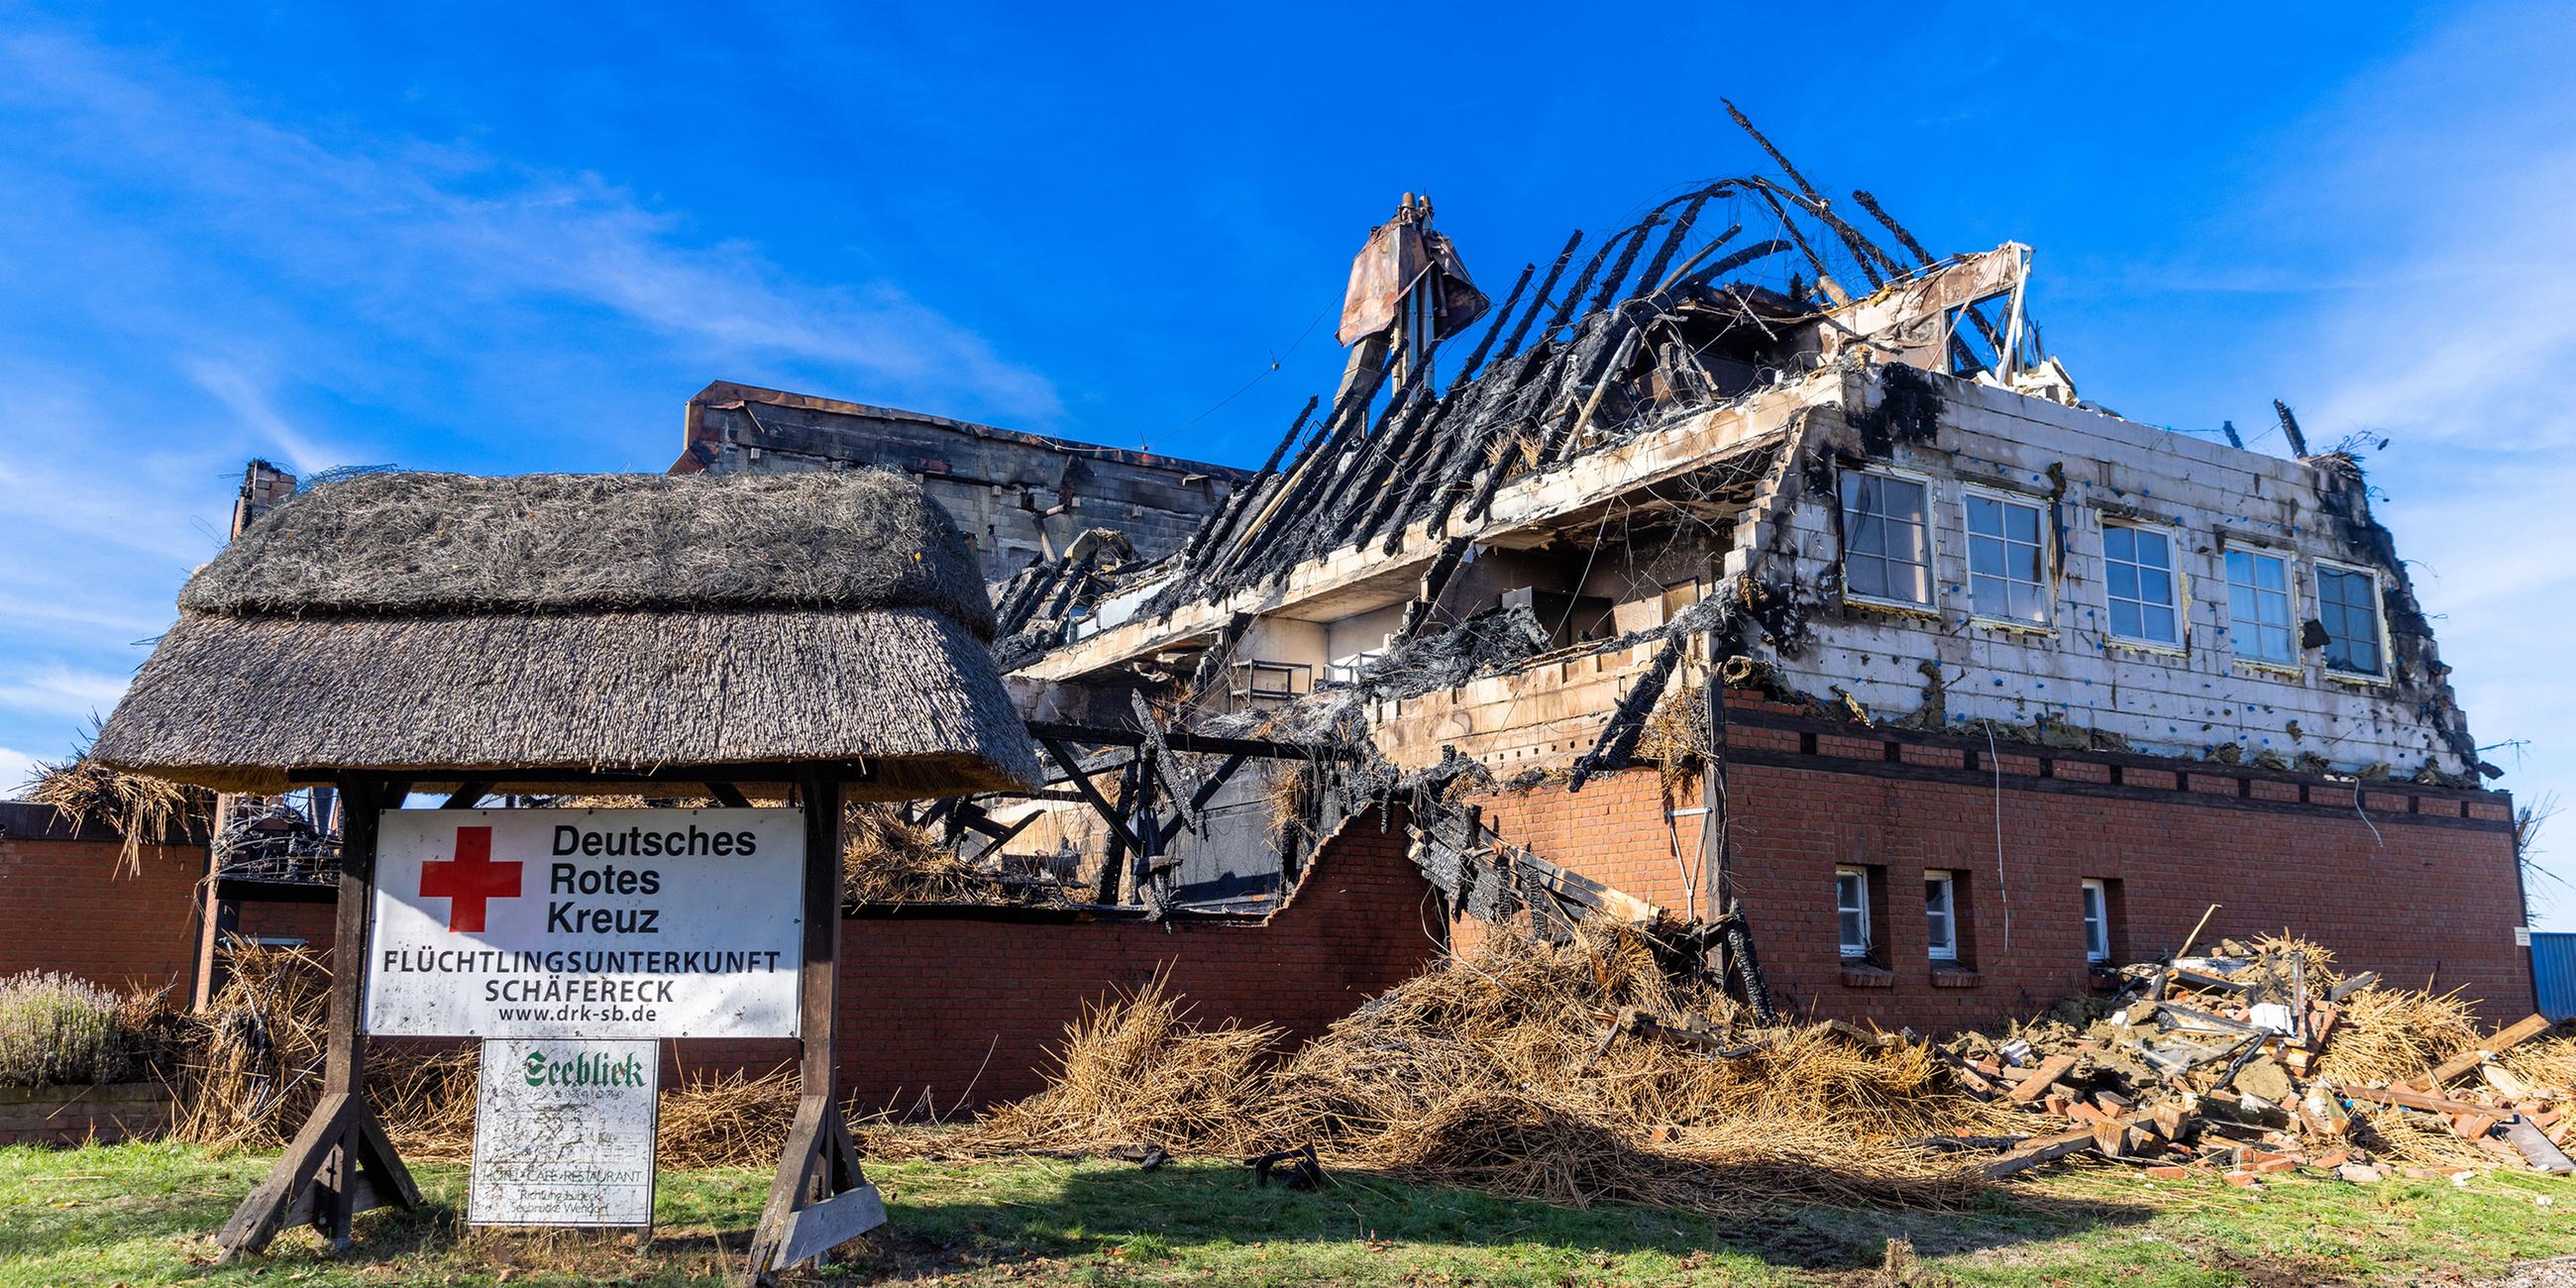 Abgebranntes Hotelgebäude, in dem ukrainische Flüchtlinge untergebracht waren